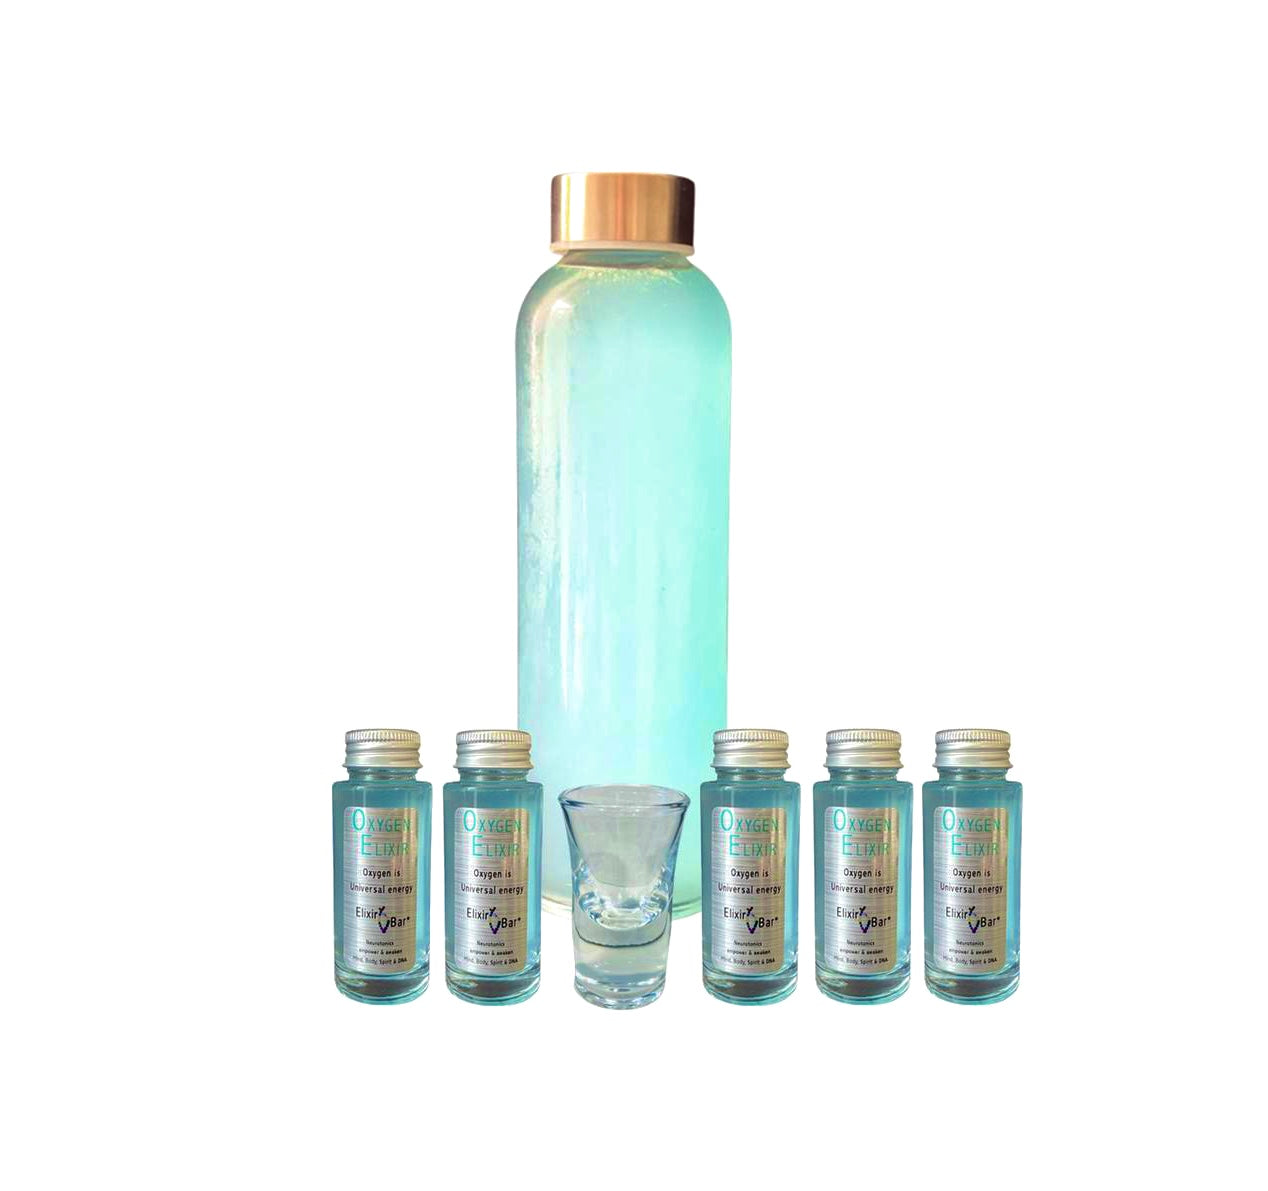 Oxygen Elixir (2-week) Cellular Detox